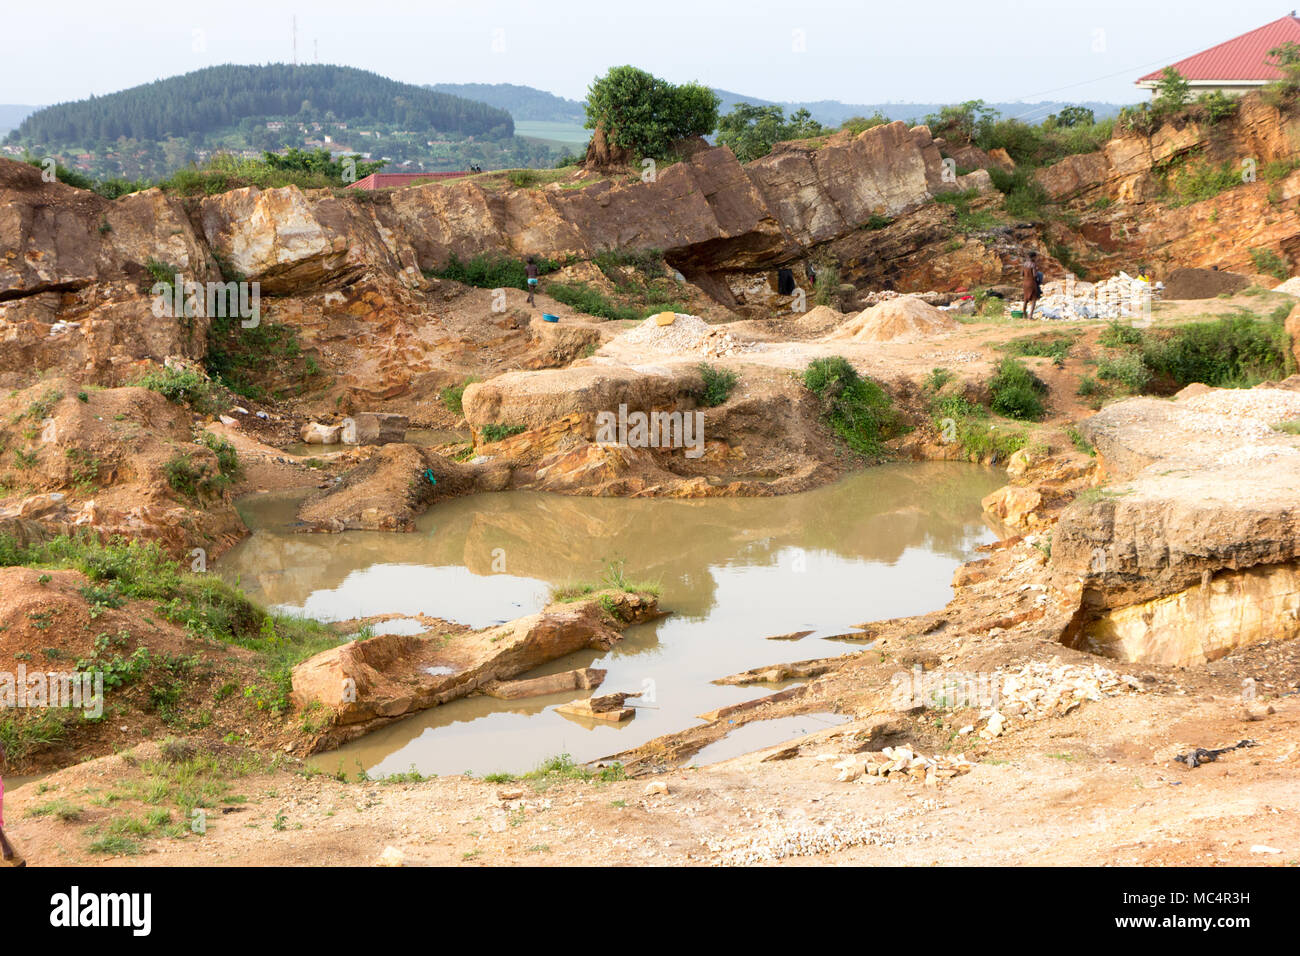 Un petit lac ou d'une grande flaque d'eau dans une carrière en Ouganda, juin 2017. Banque D'Images